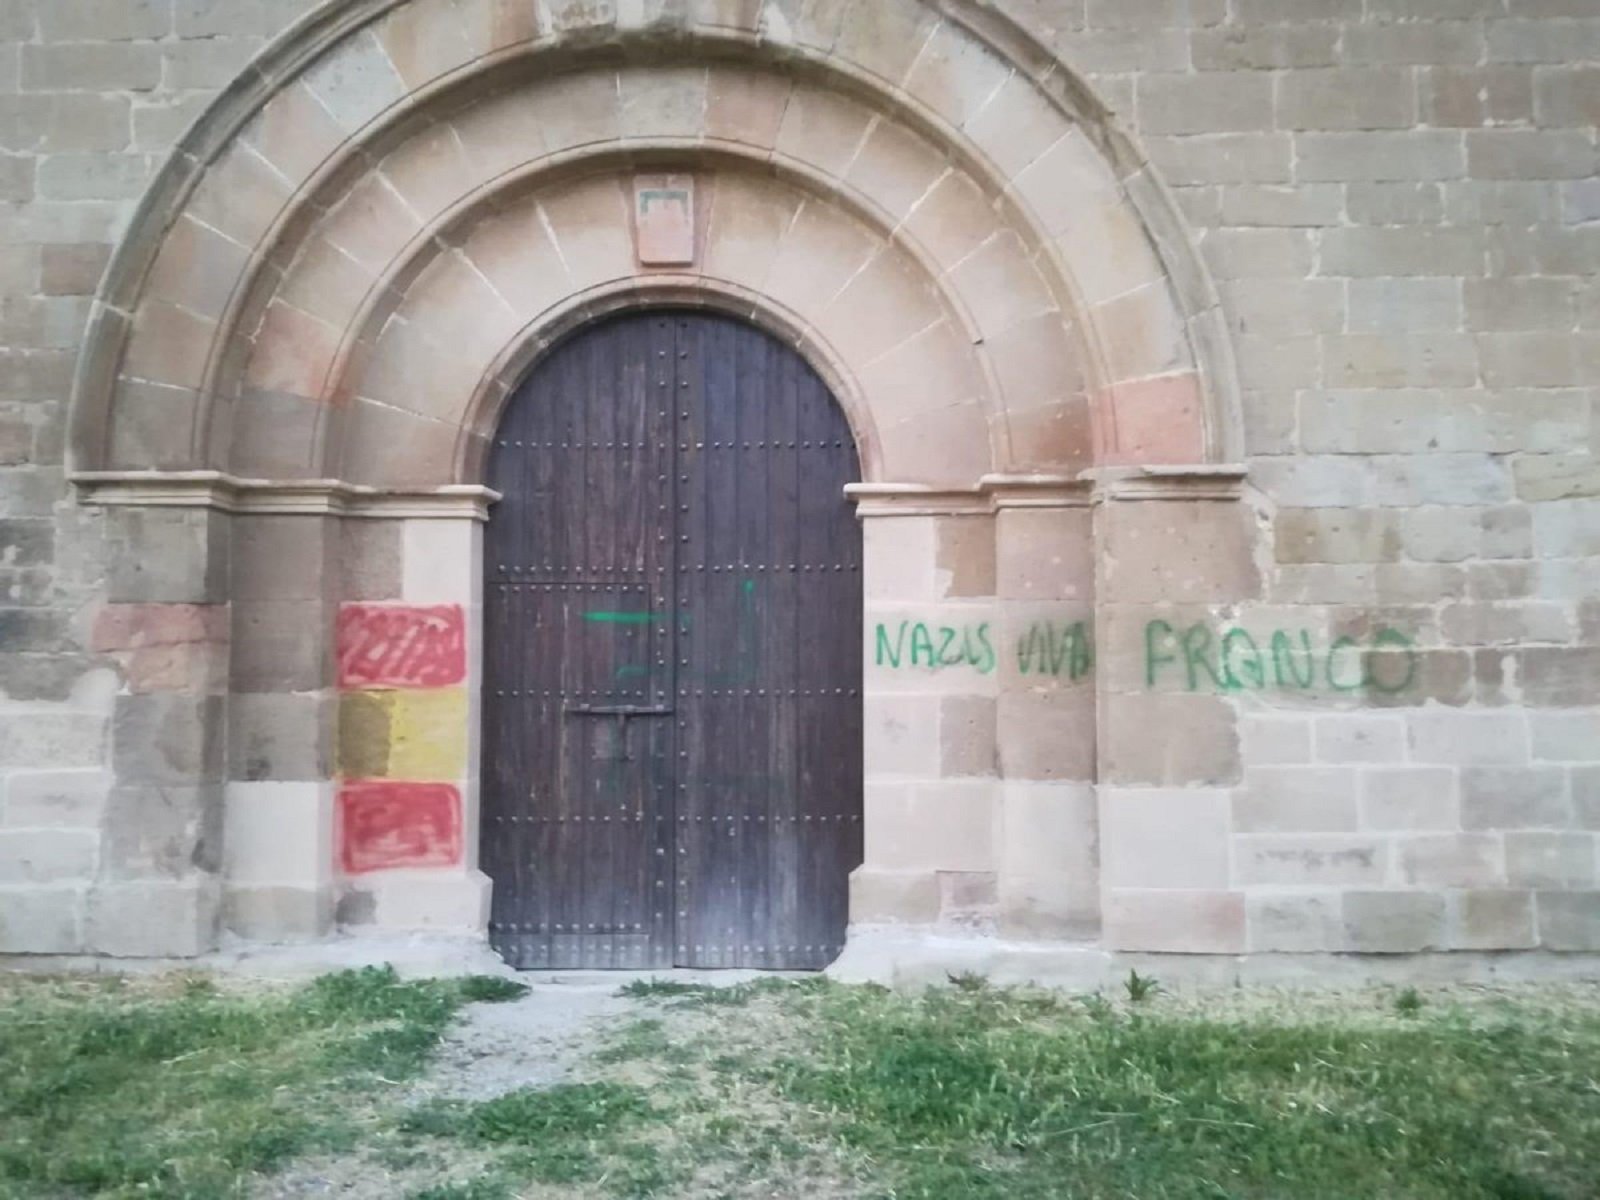 Apareixen pintades espanyolistes en un històric monestir del segle XII